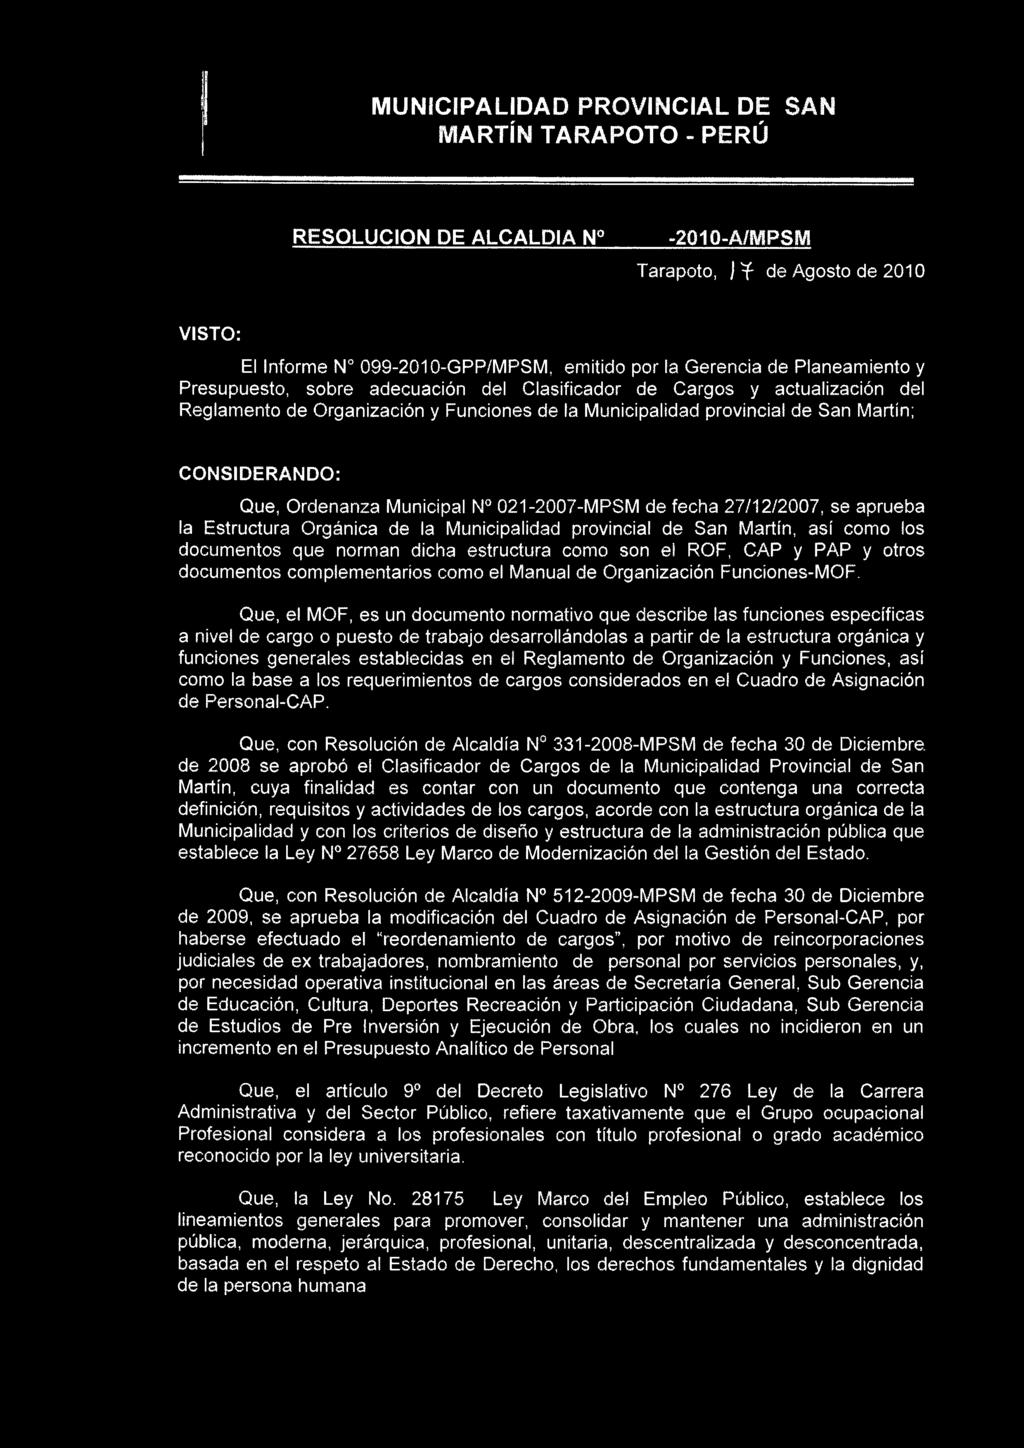 Ordenanza Municipal N 021-2007-MPSM de fecha 27/12/2007, se aprueba la Estructura Orgánica de la Municipalidad provincial de San Martín, así como los documentos que norman dicha estructura como son